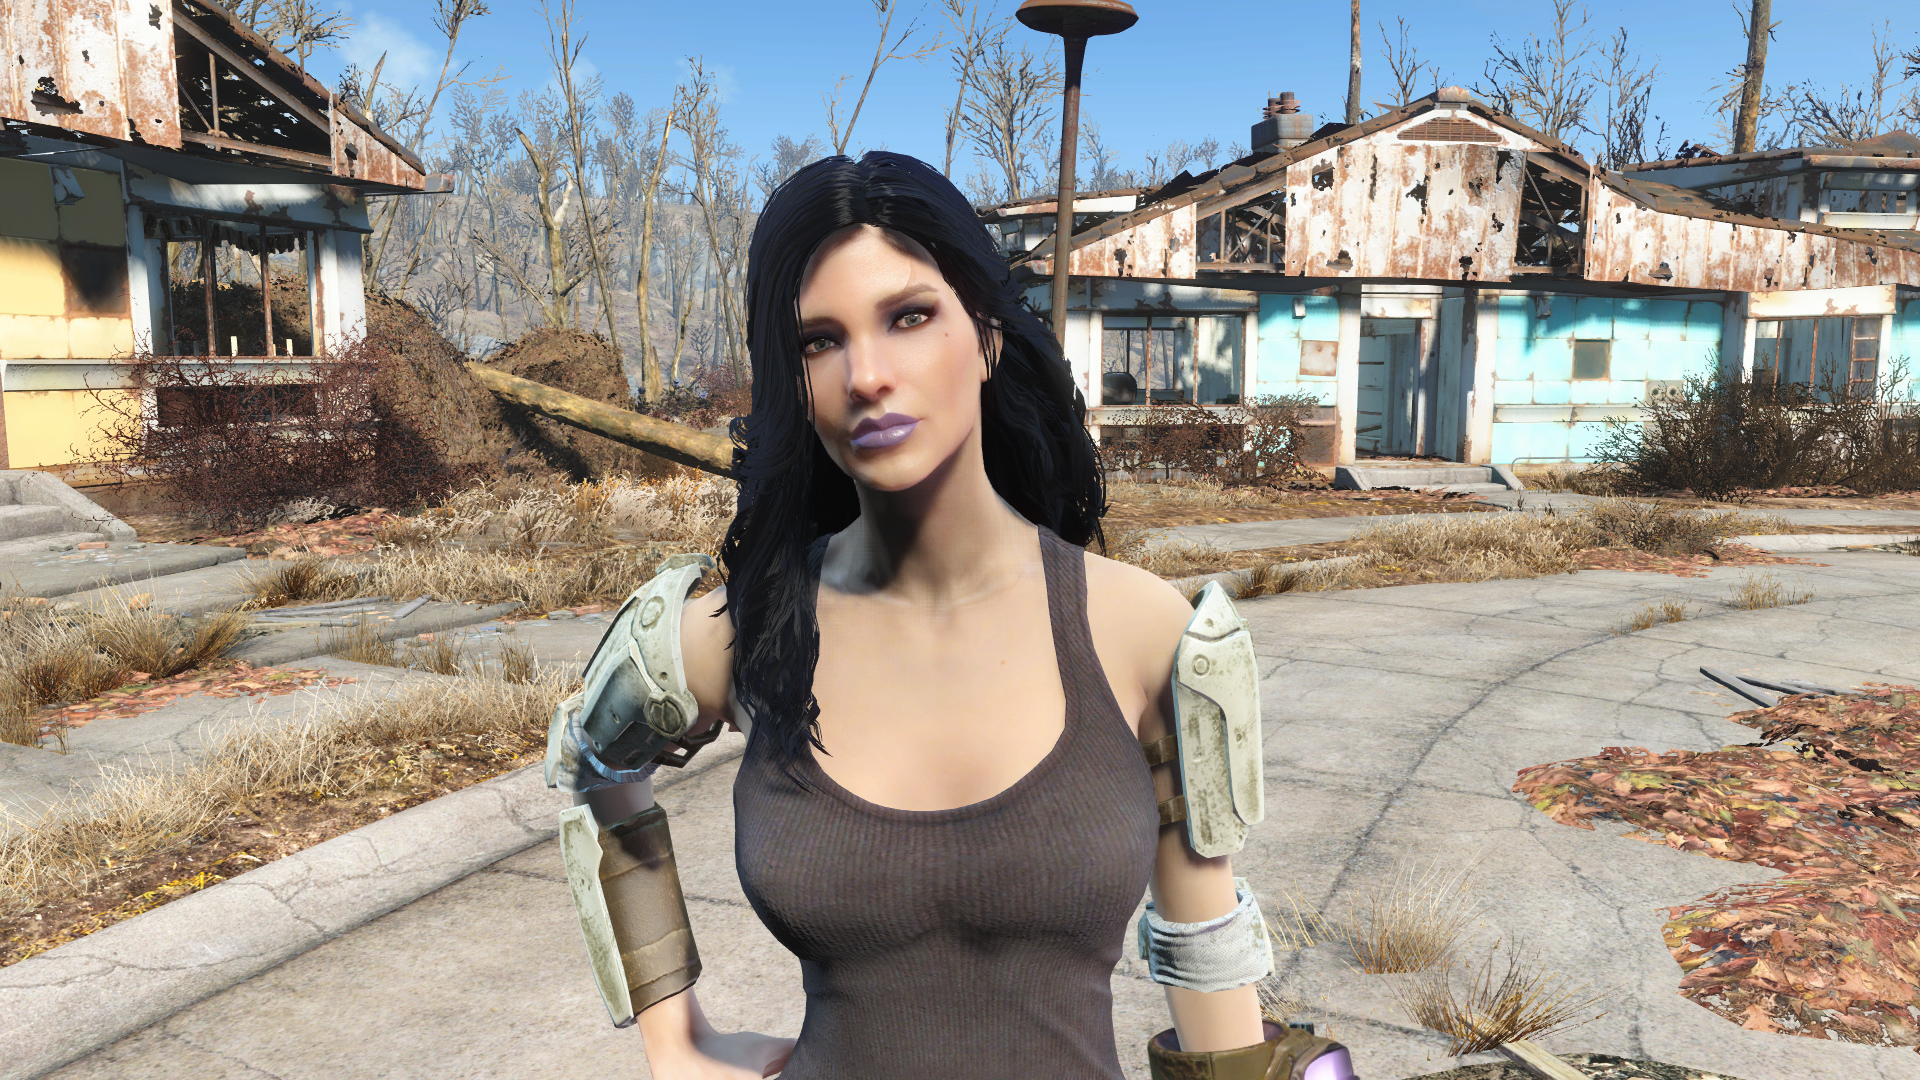 Fallout 4 physics mod